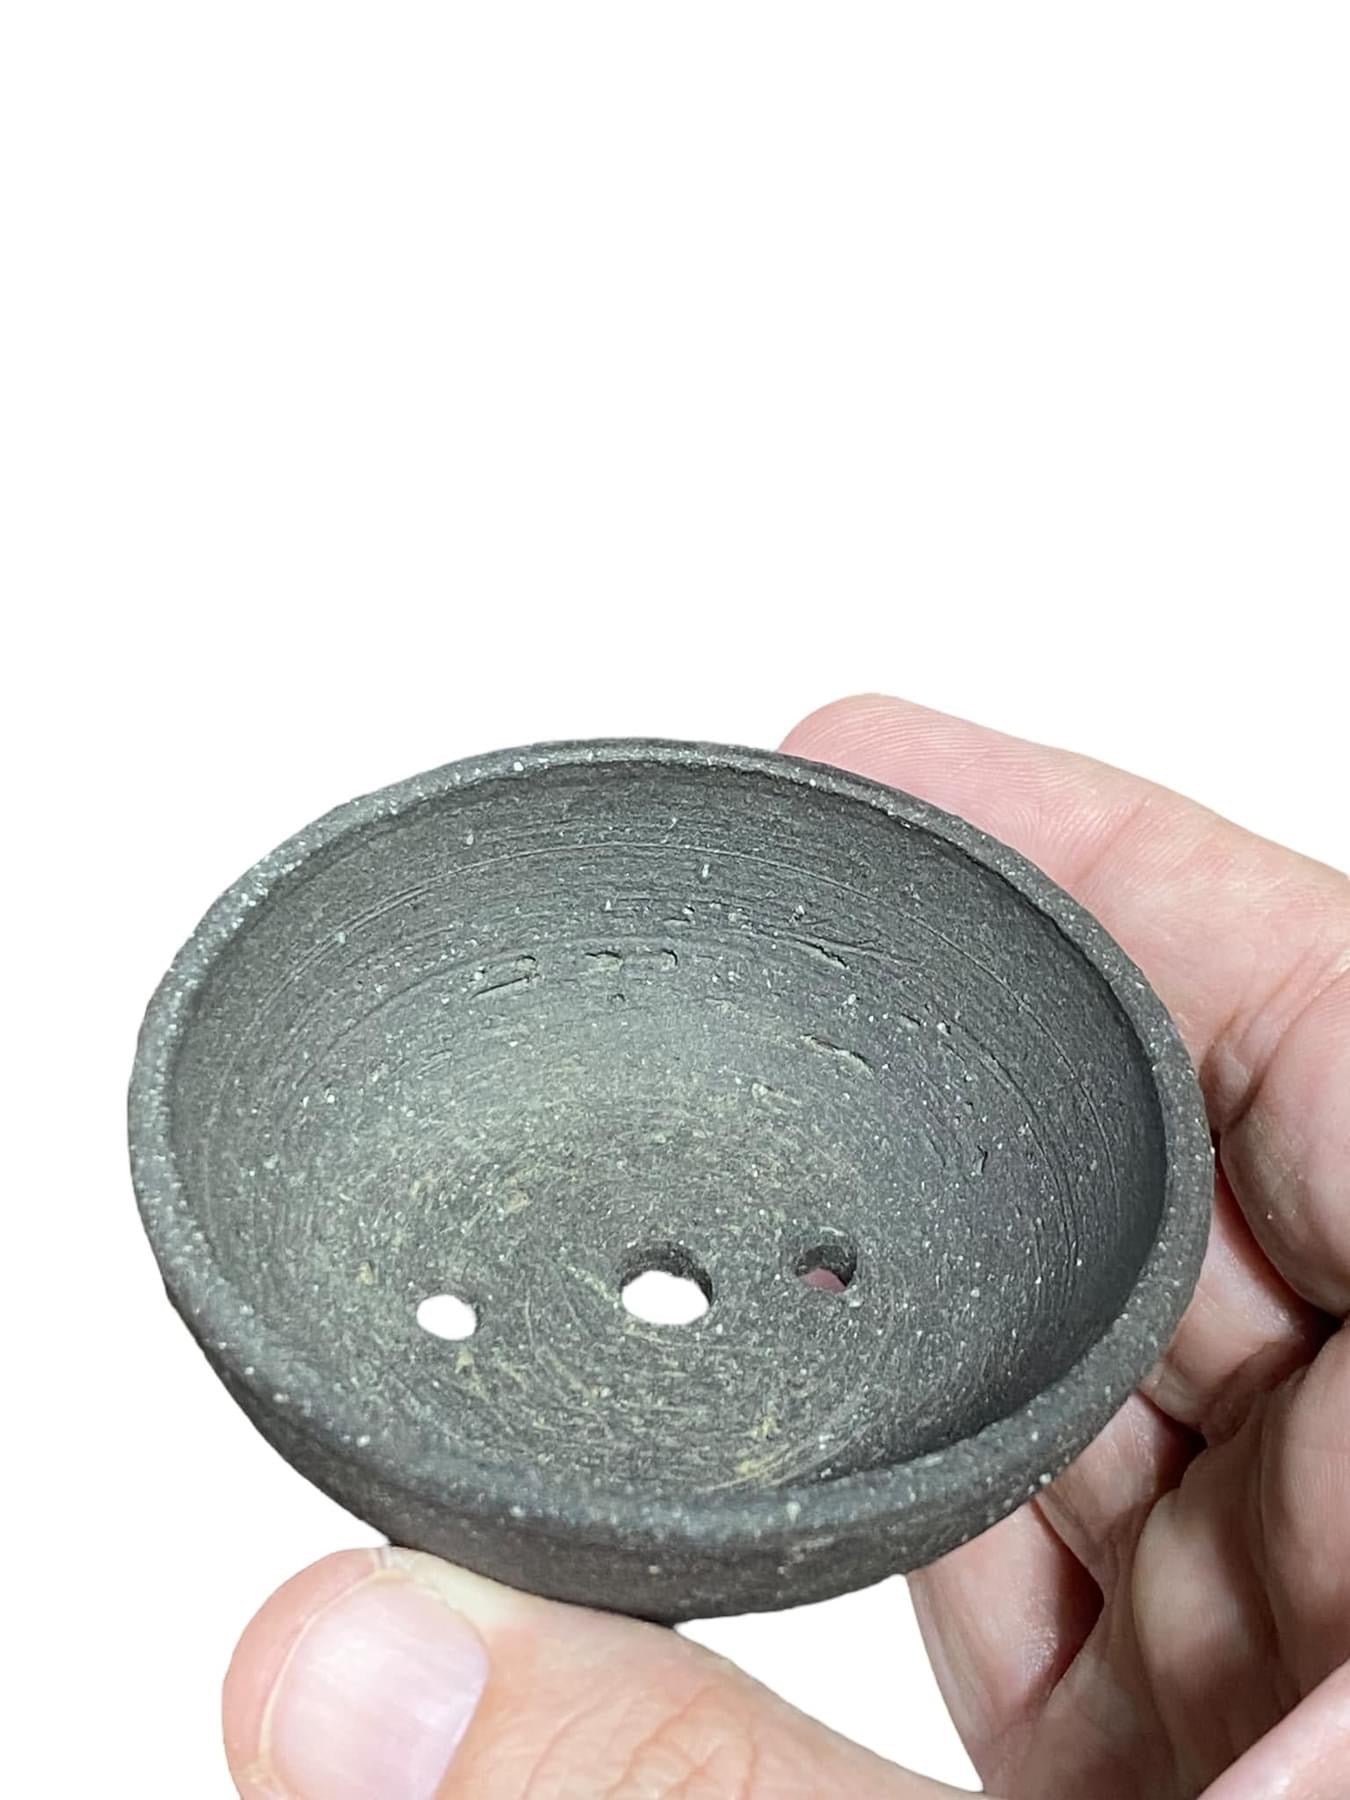 Heian Kosen - Unglazed Round Bonsai or Accent Pot